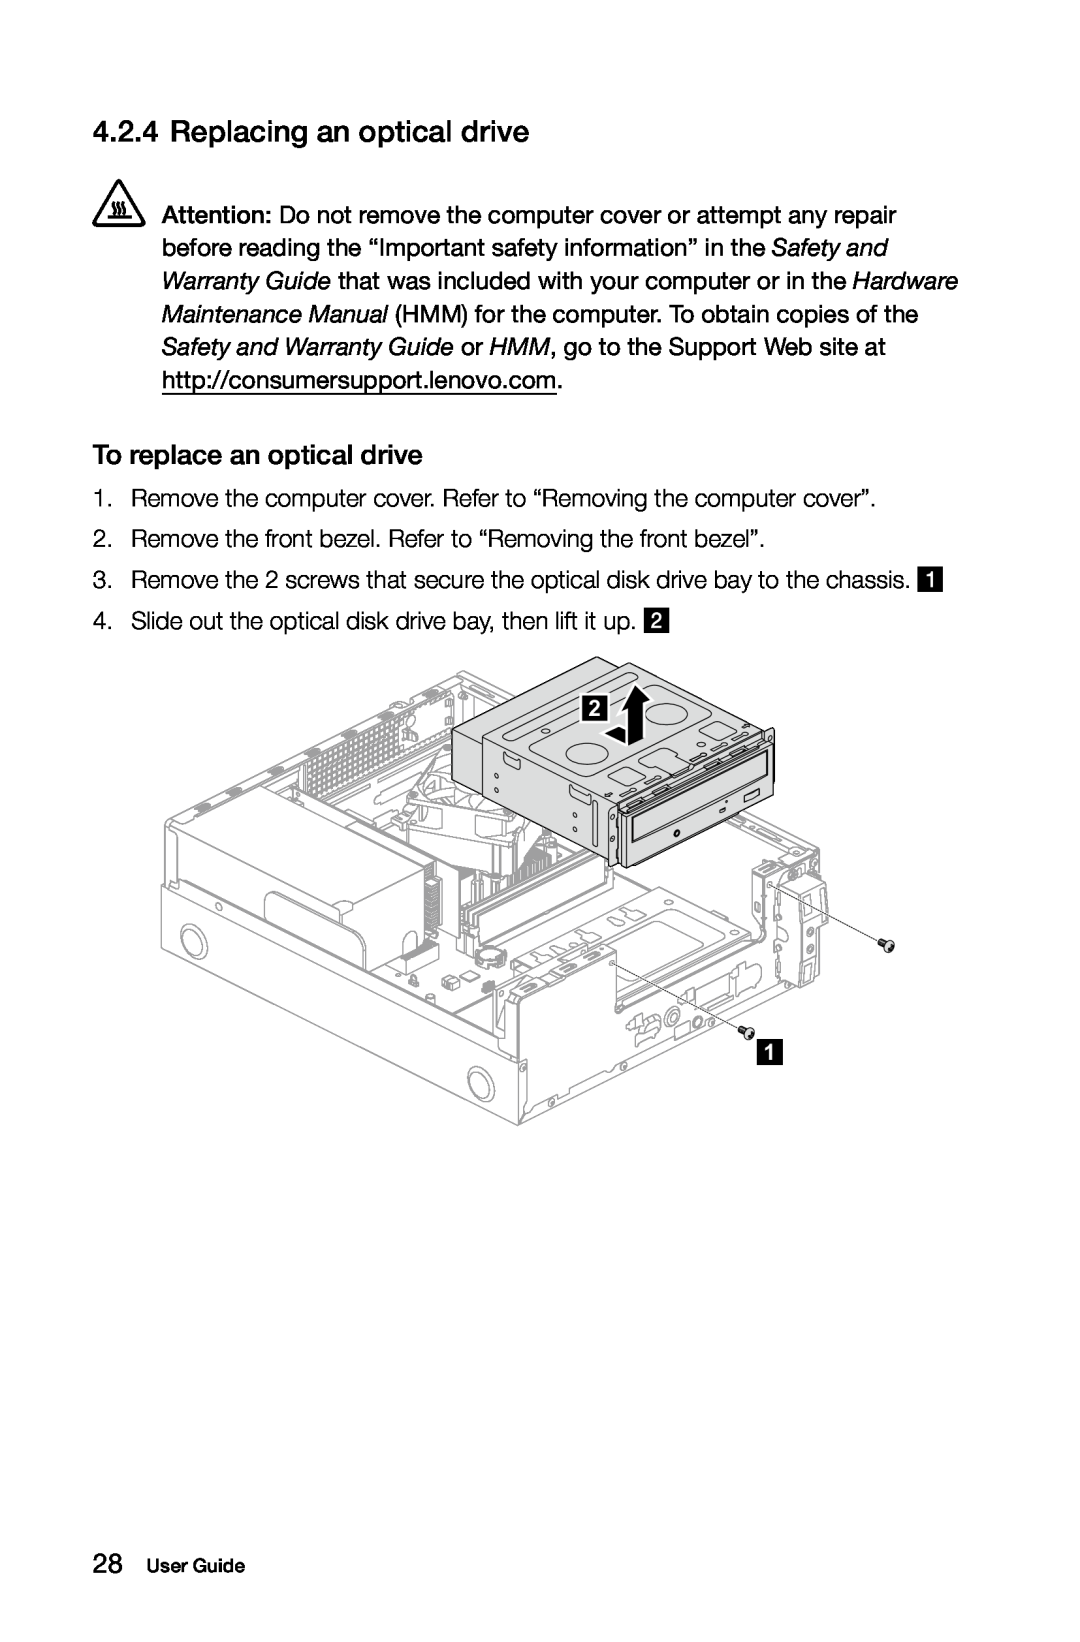 Lenovo H5S manual Replacing an optical drive, To replace an optical drive 